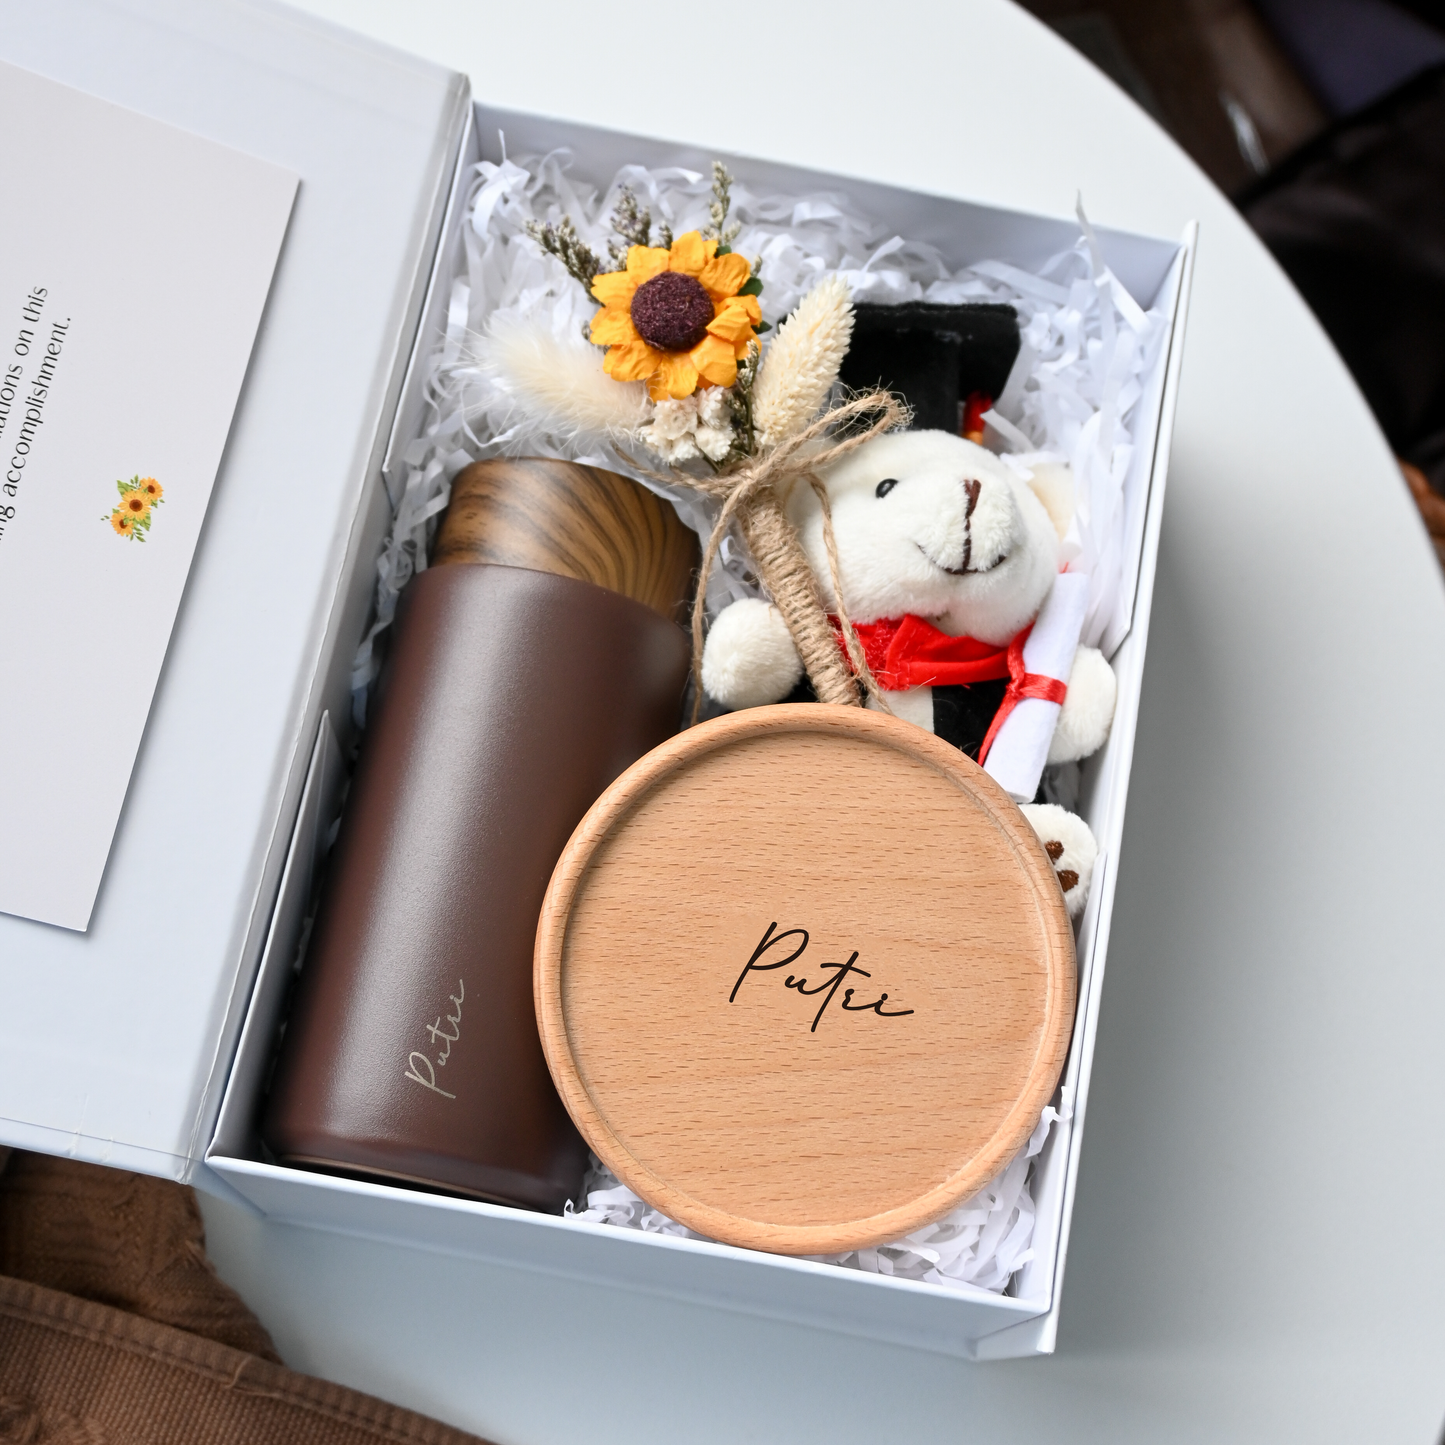 Personalised Graduation Gift Set Bottle Coaster Bear Singapore